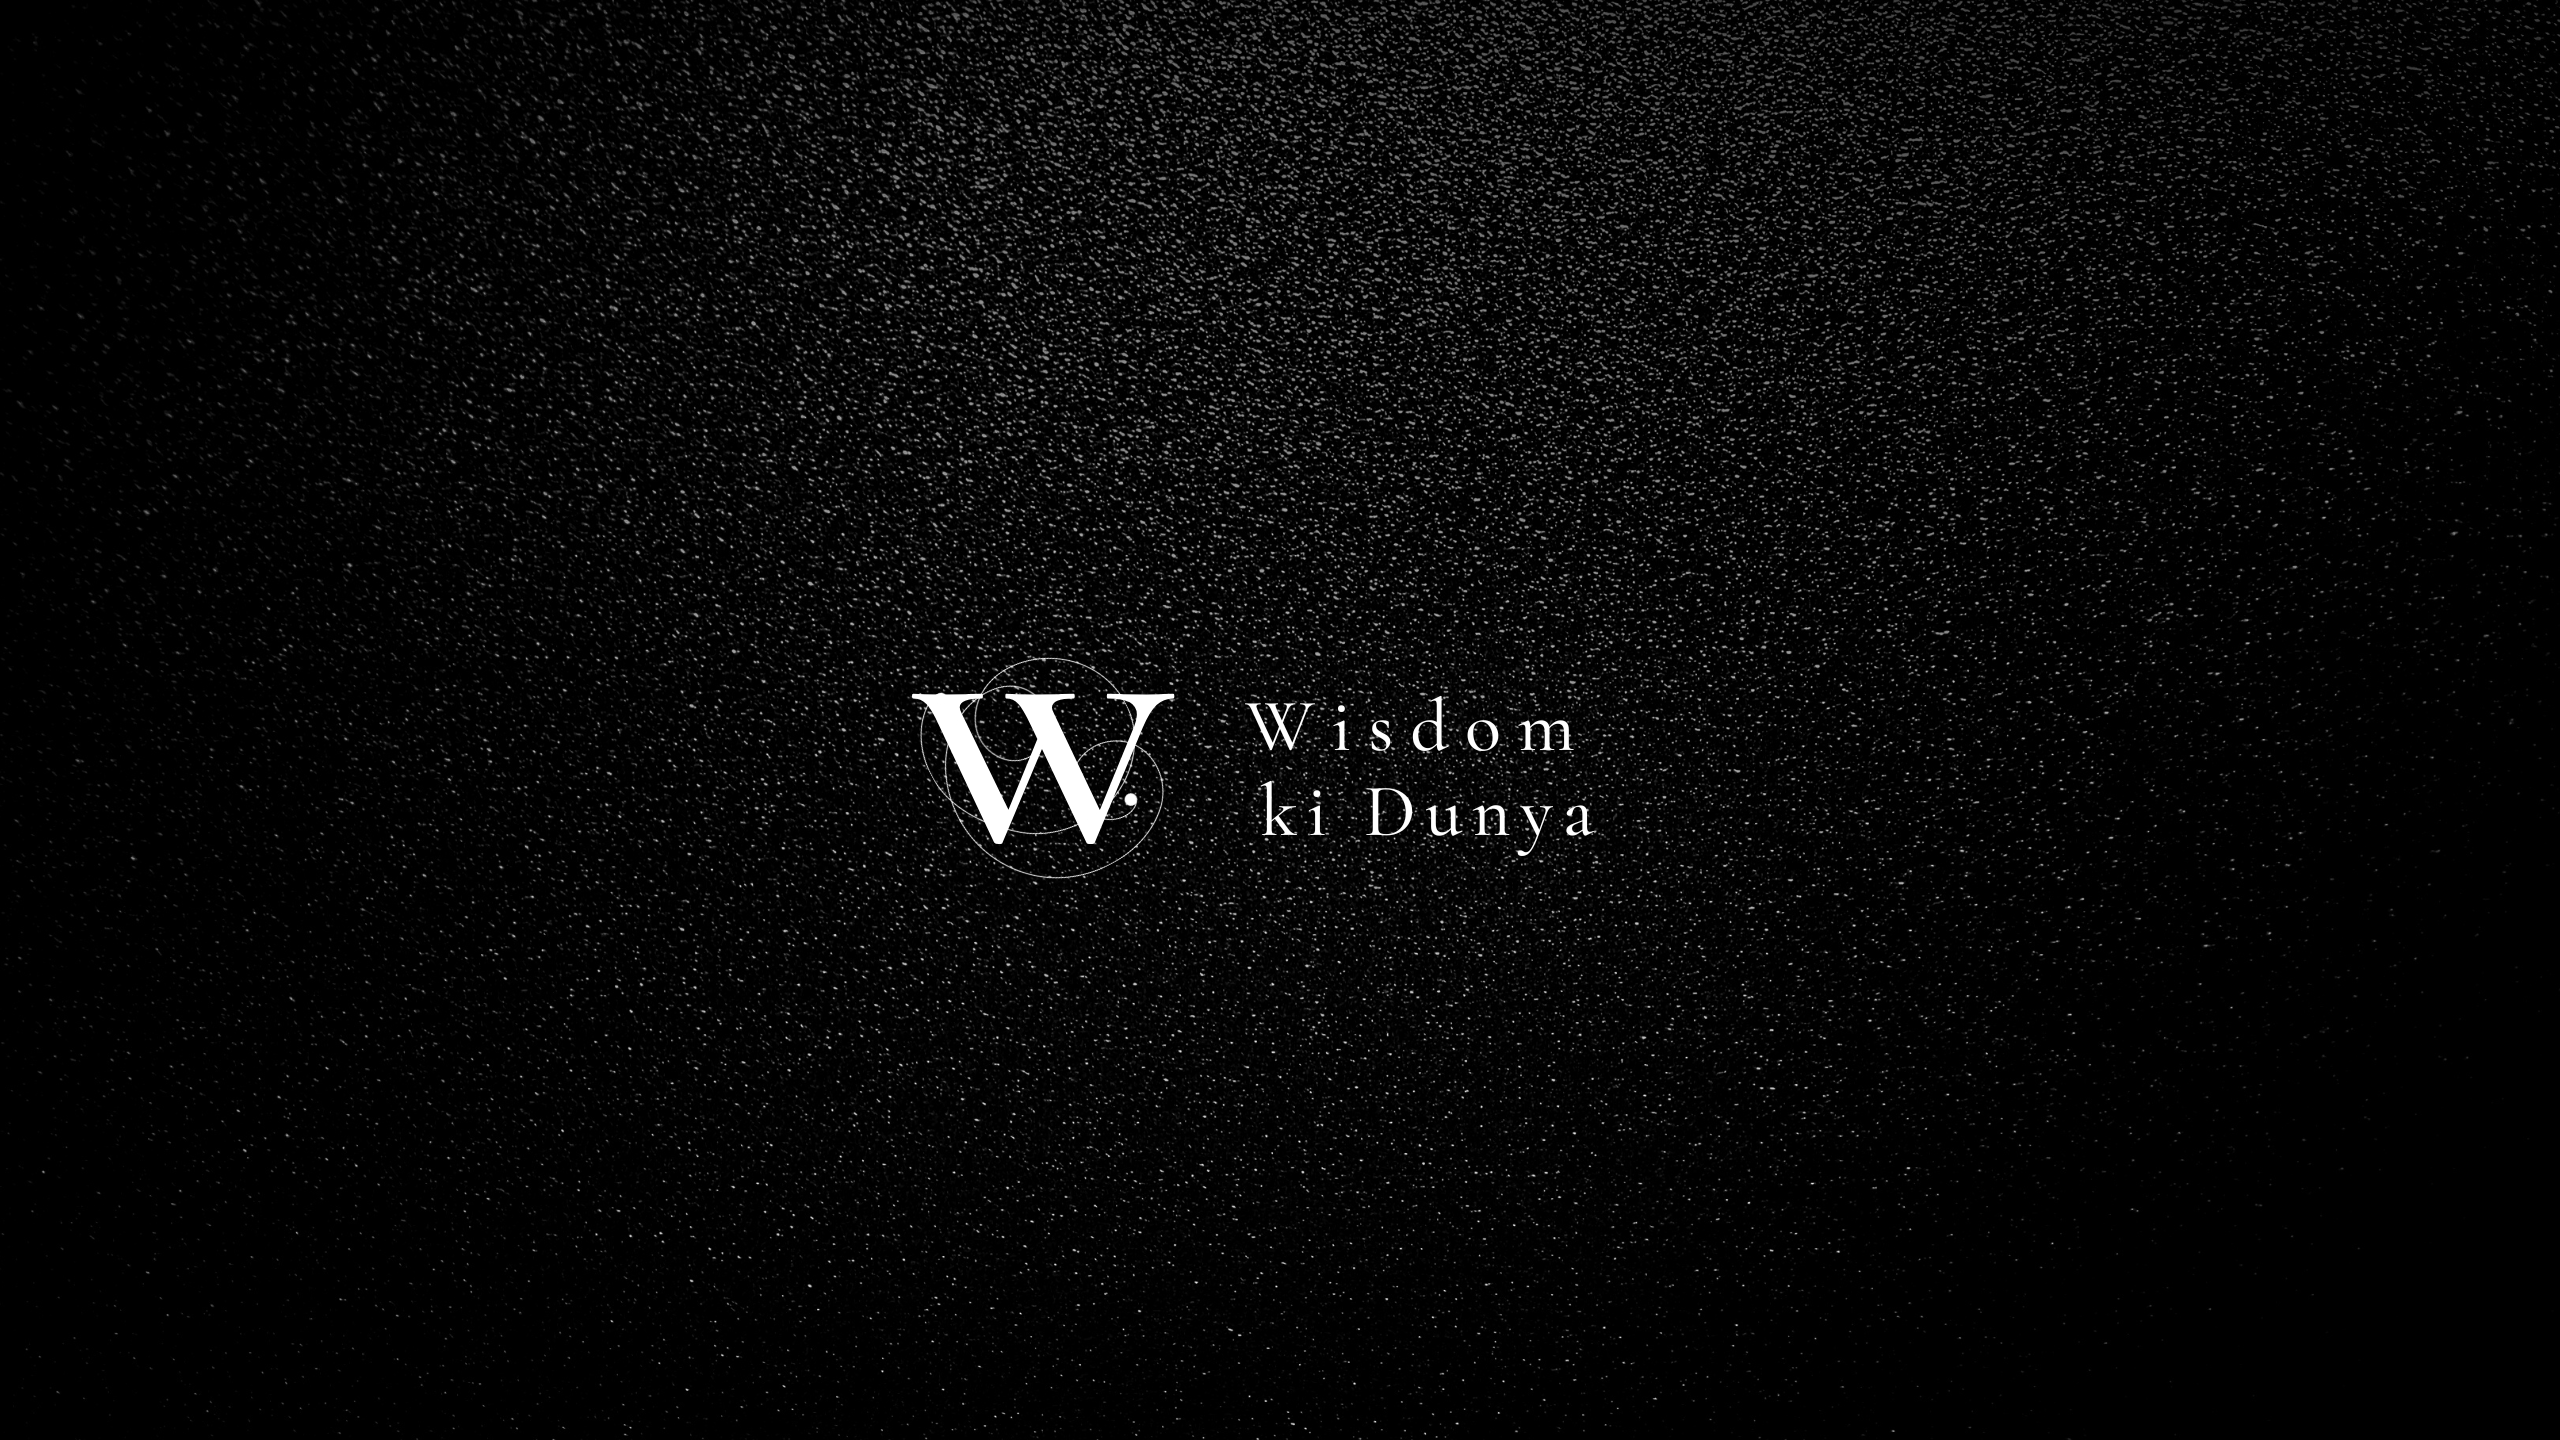 Wisdom Ki Dunya